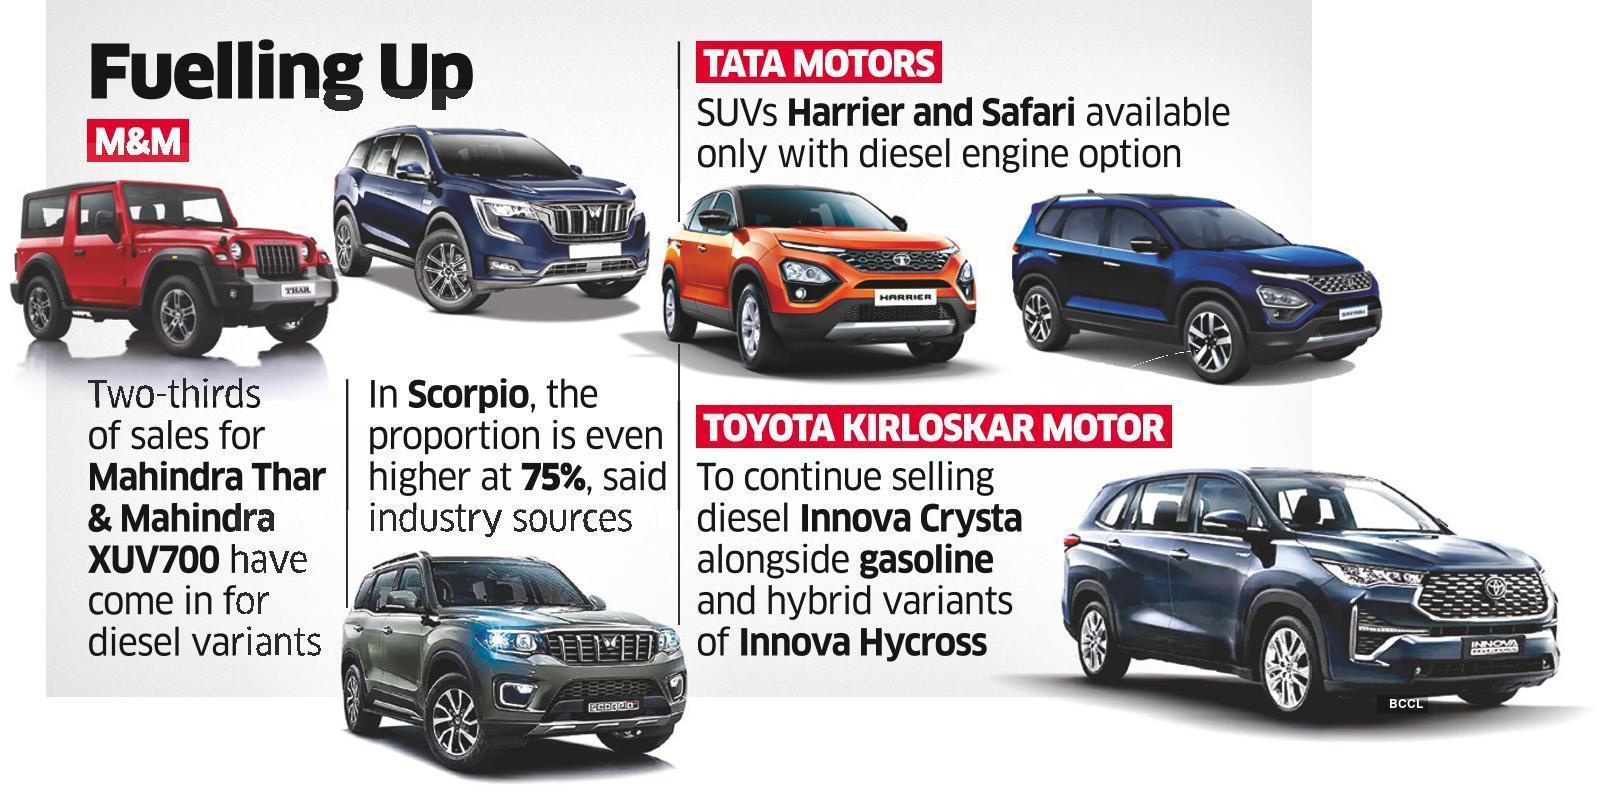 Tata Motors and Mahindra & Mahindra haven't given up on diesel yet